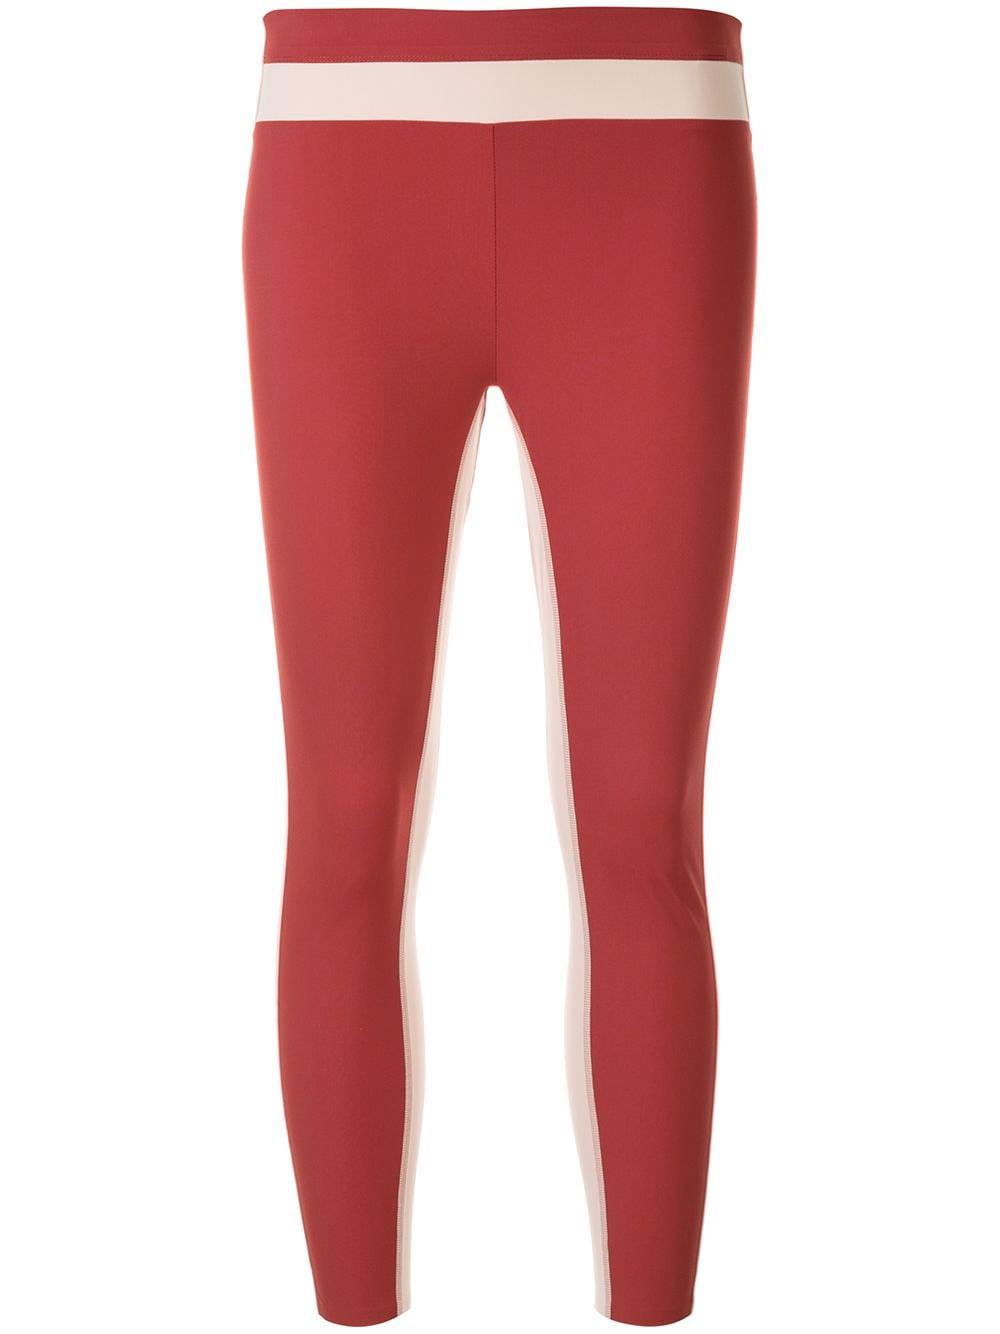 Vaara Synthetic Freya leggings in Red - Lyst